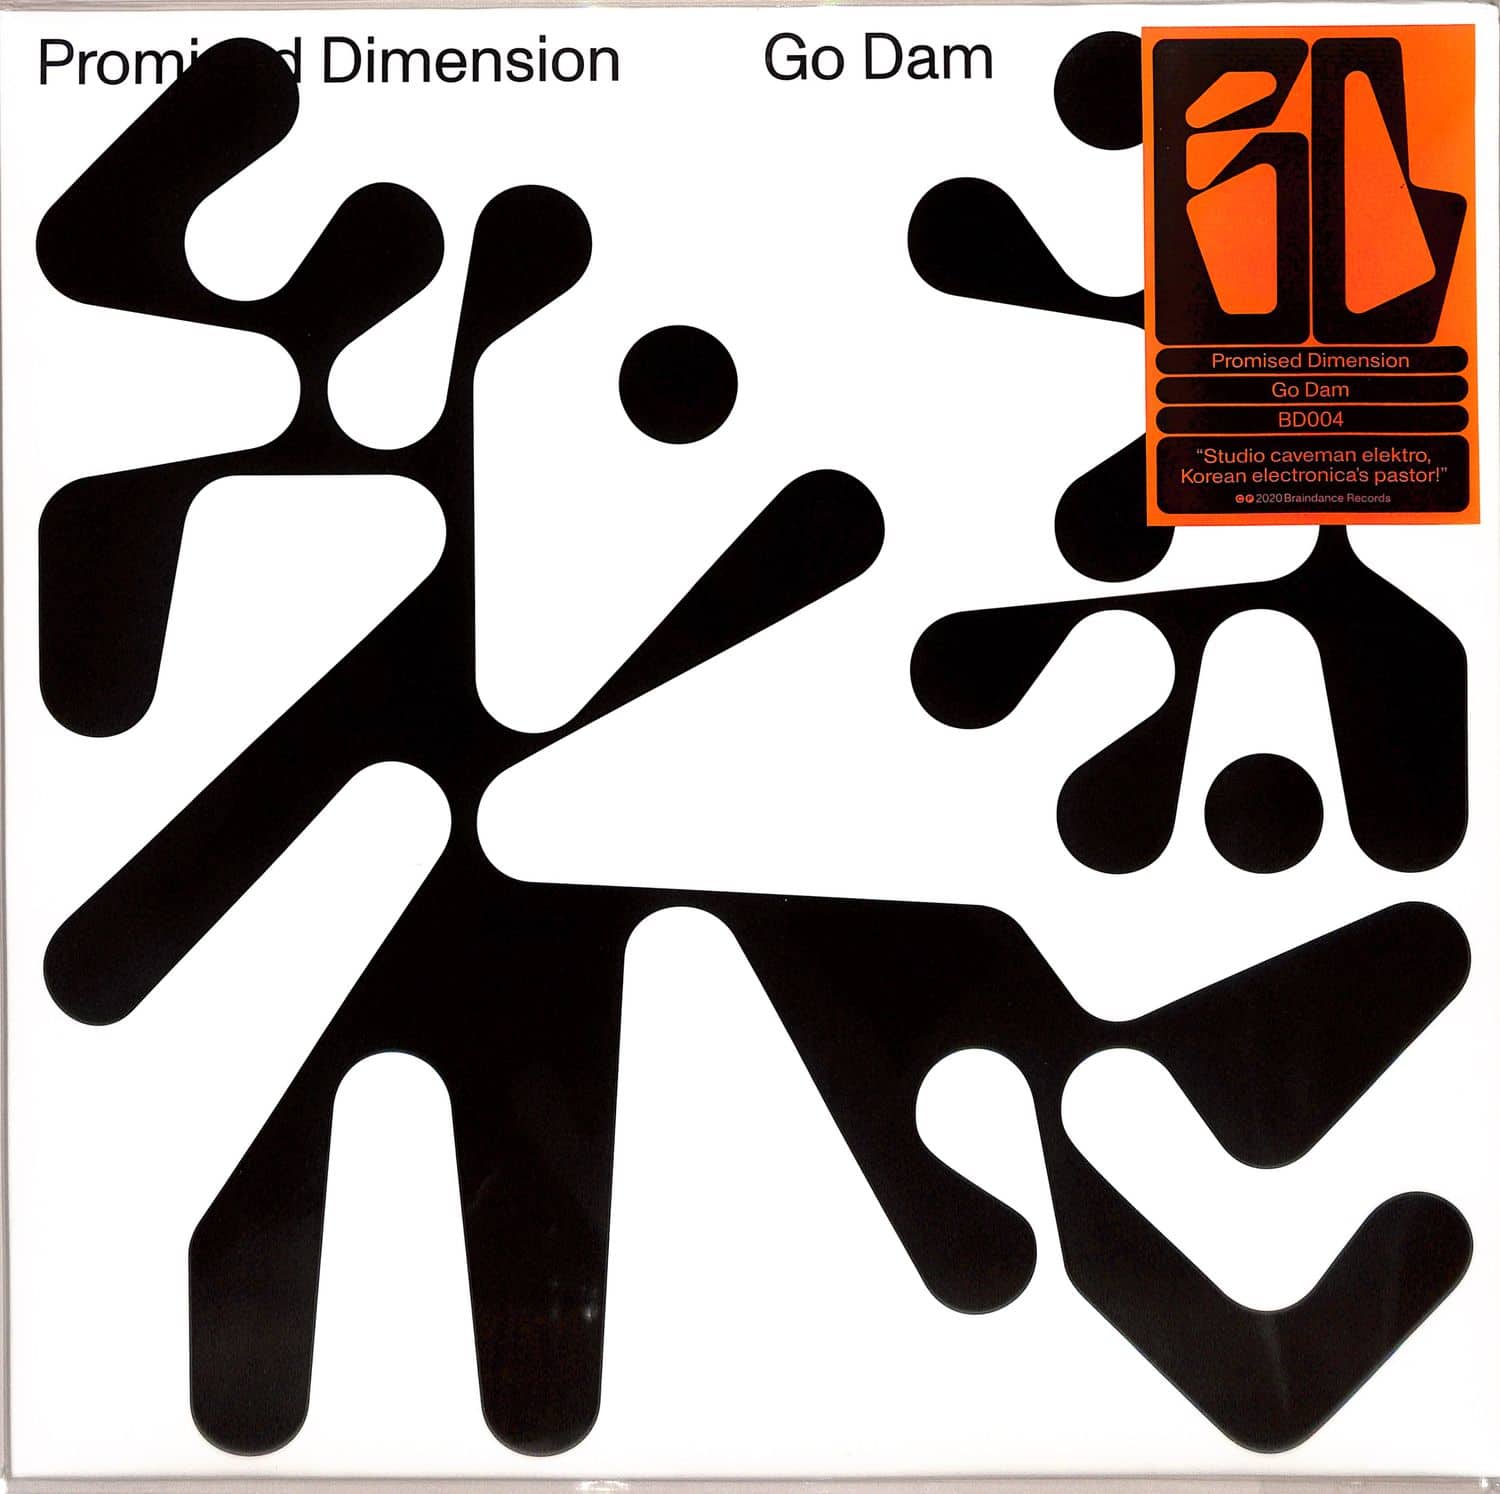 Go Dam - PROMISED DIMENSION